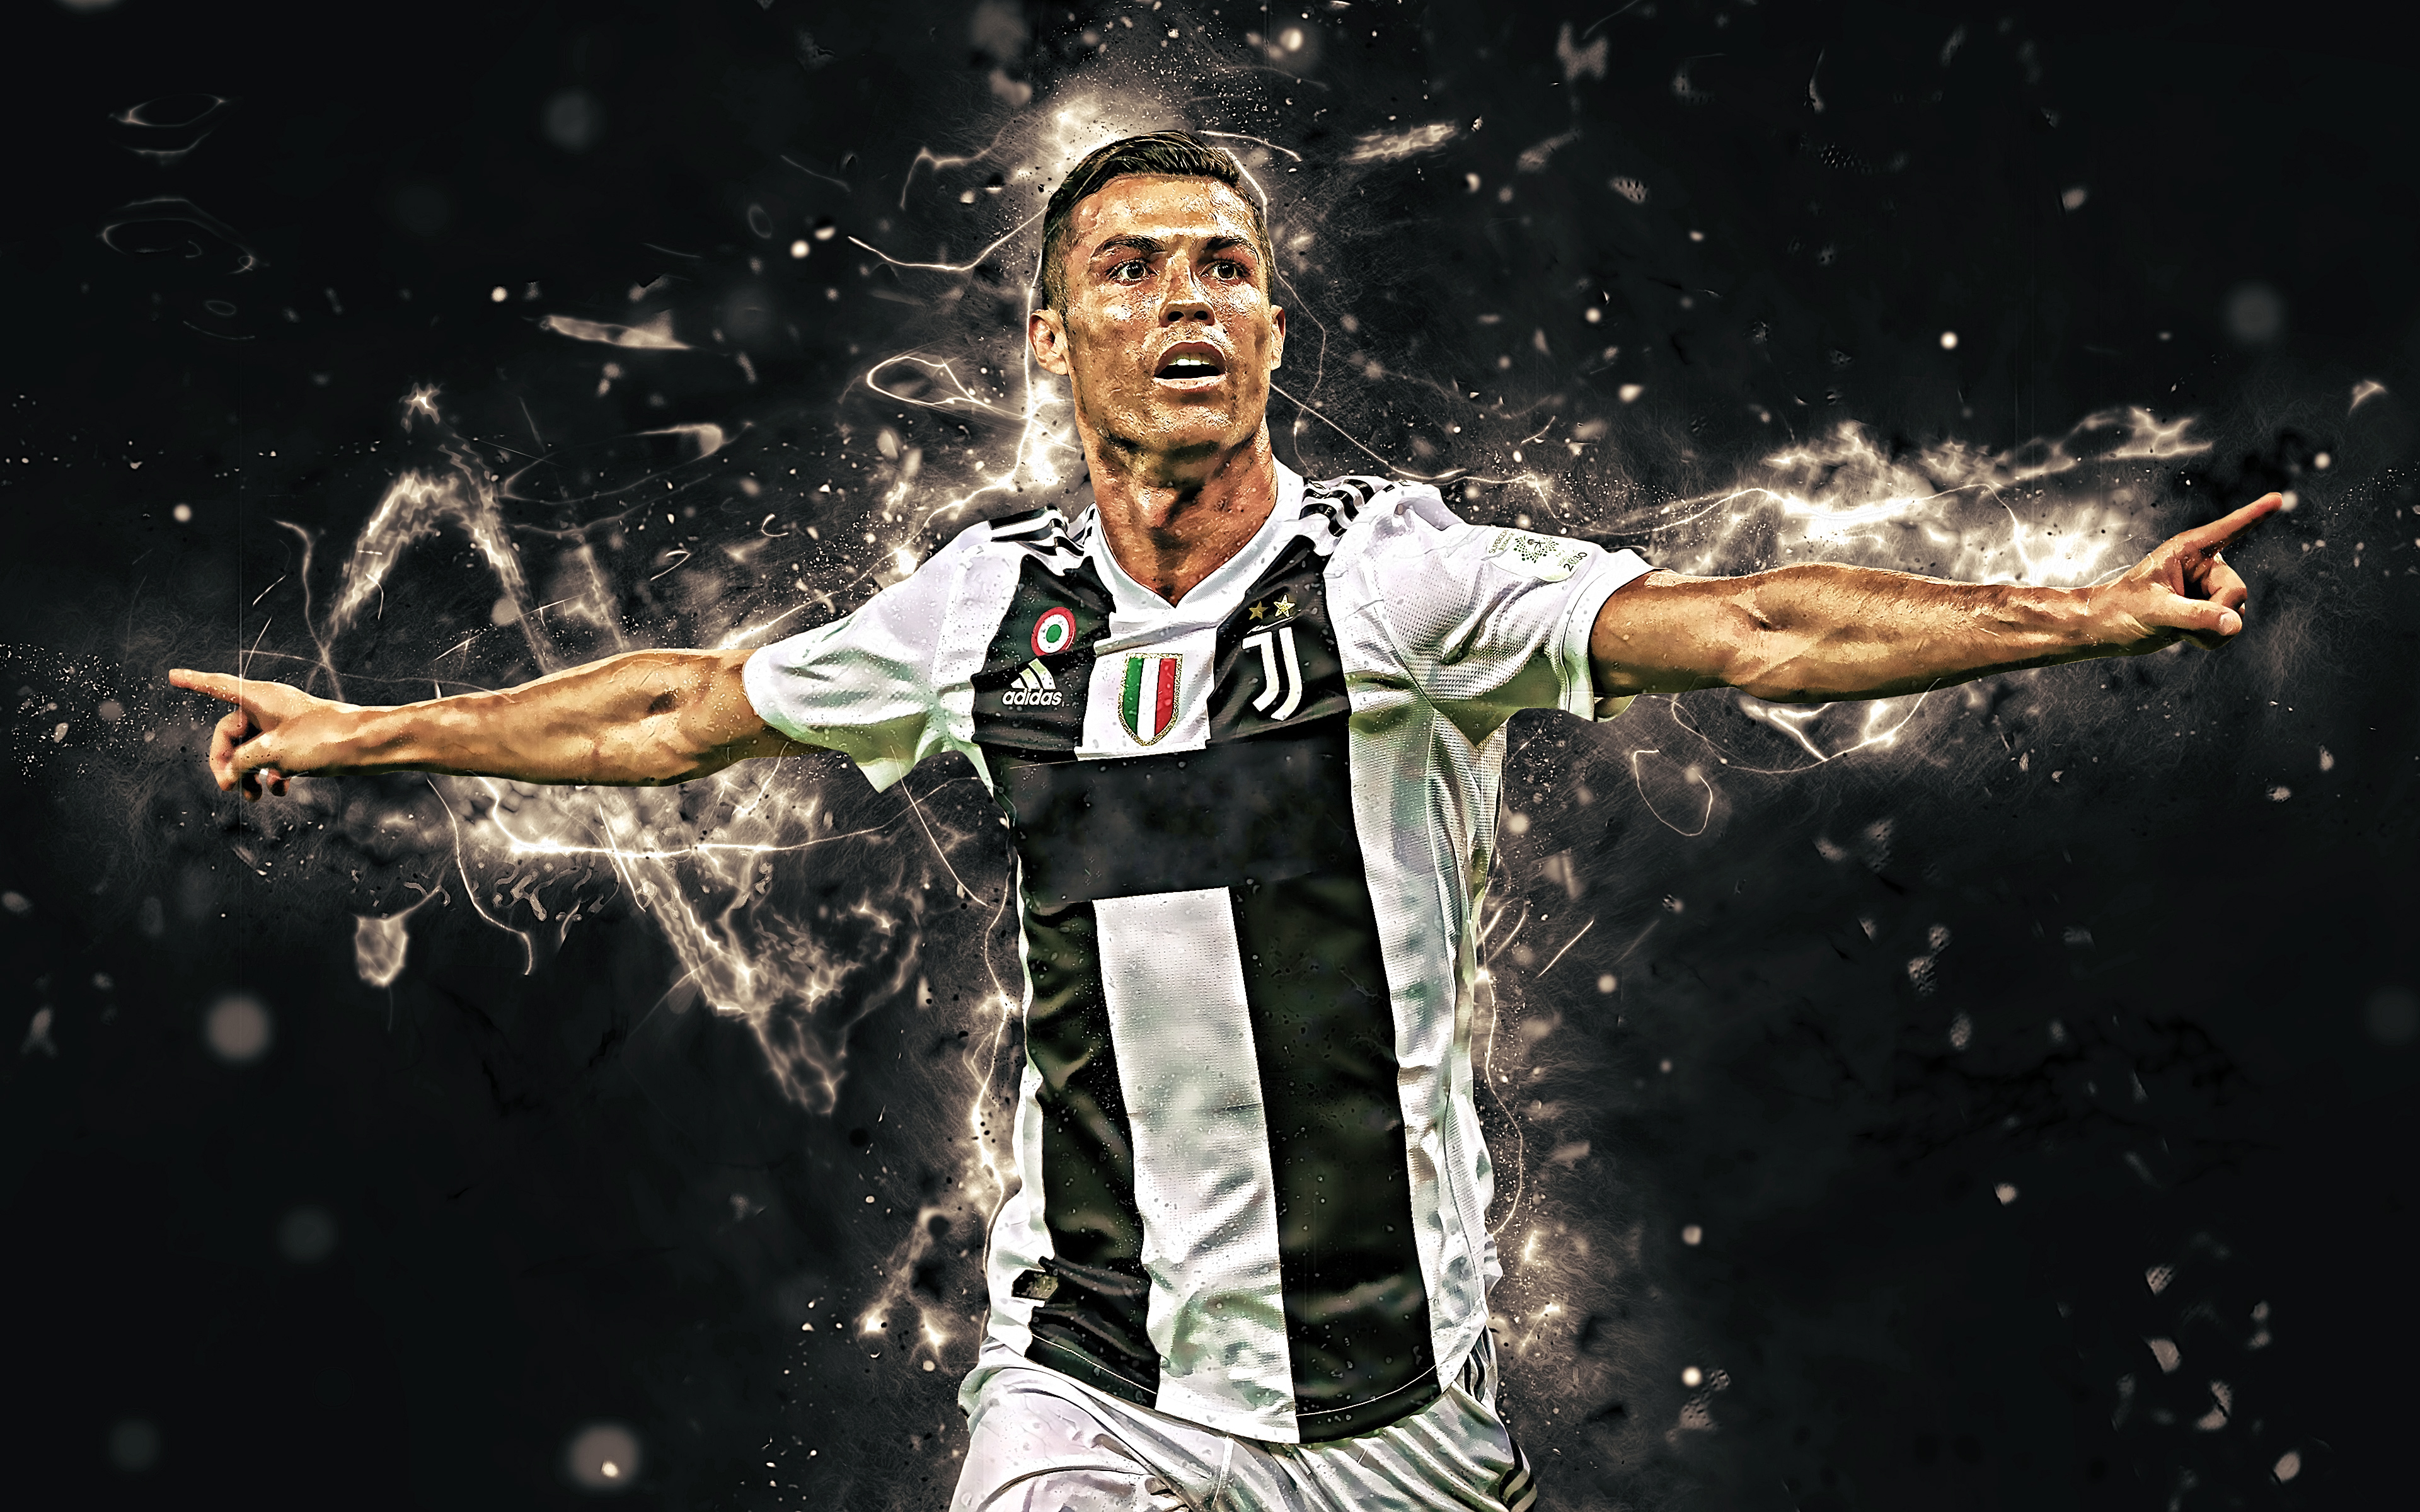 Chất lượng 4K của bức hình về Ronaldo sẽ khiến bạn phải trầm trồ thán phục.